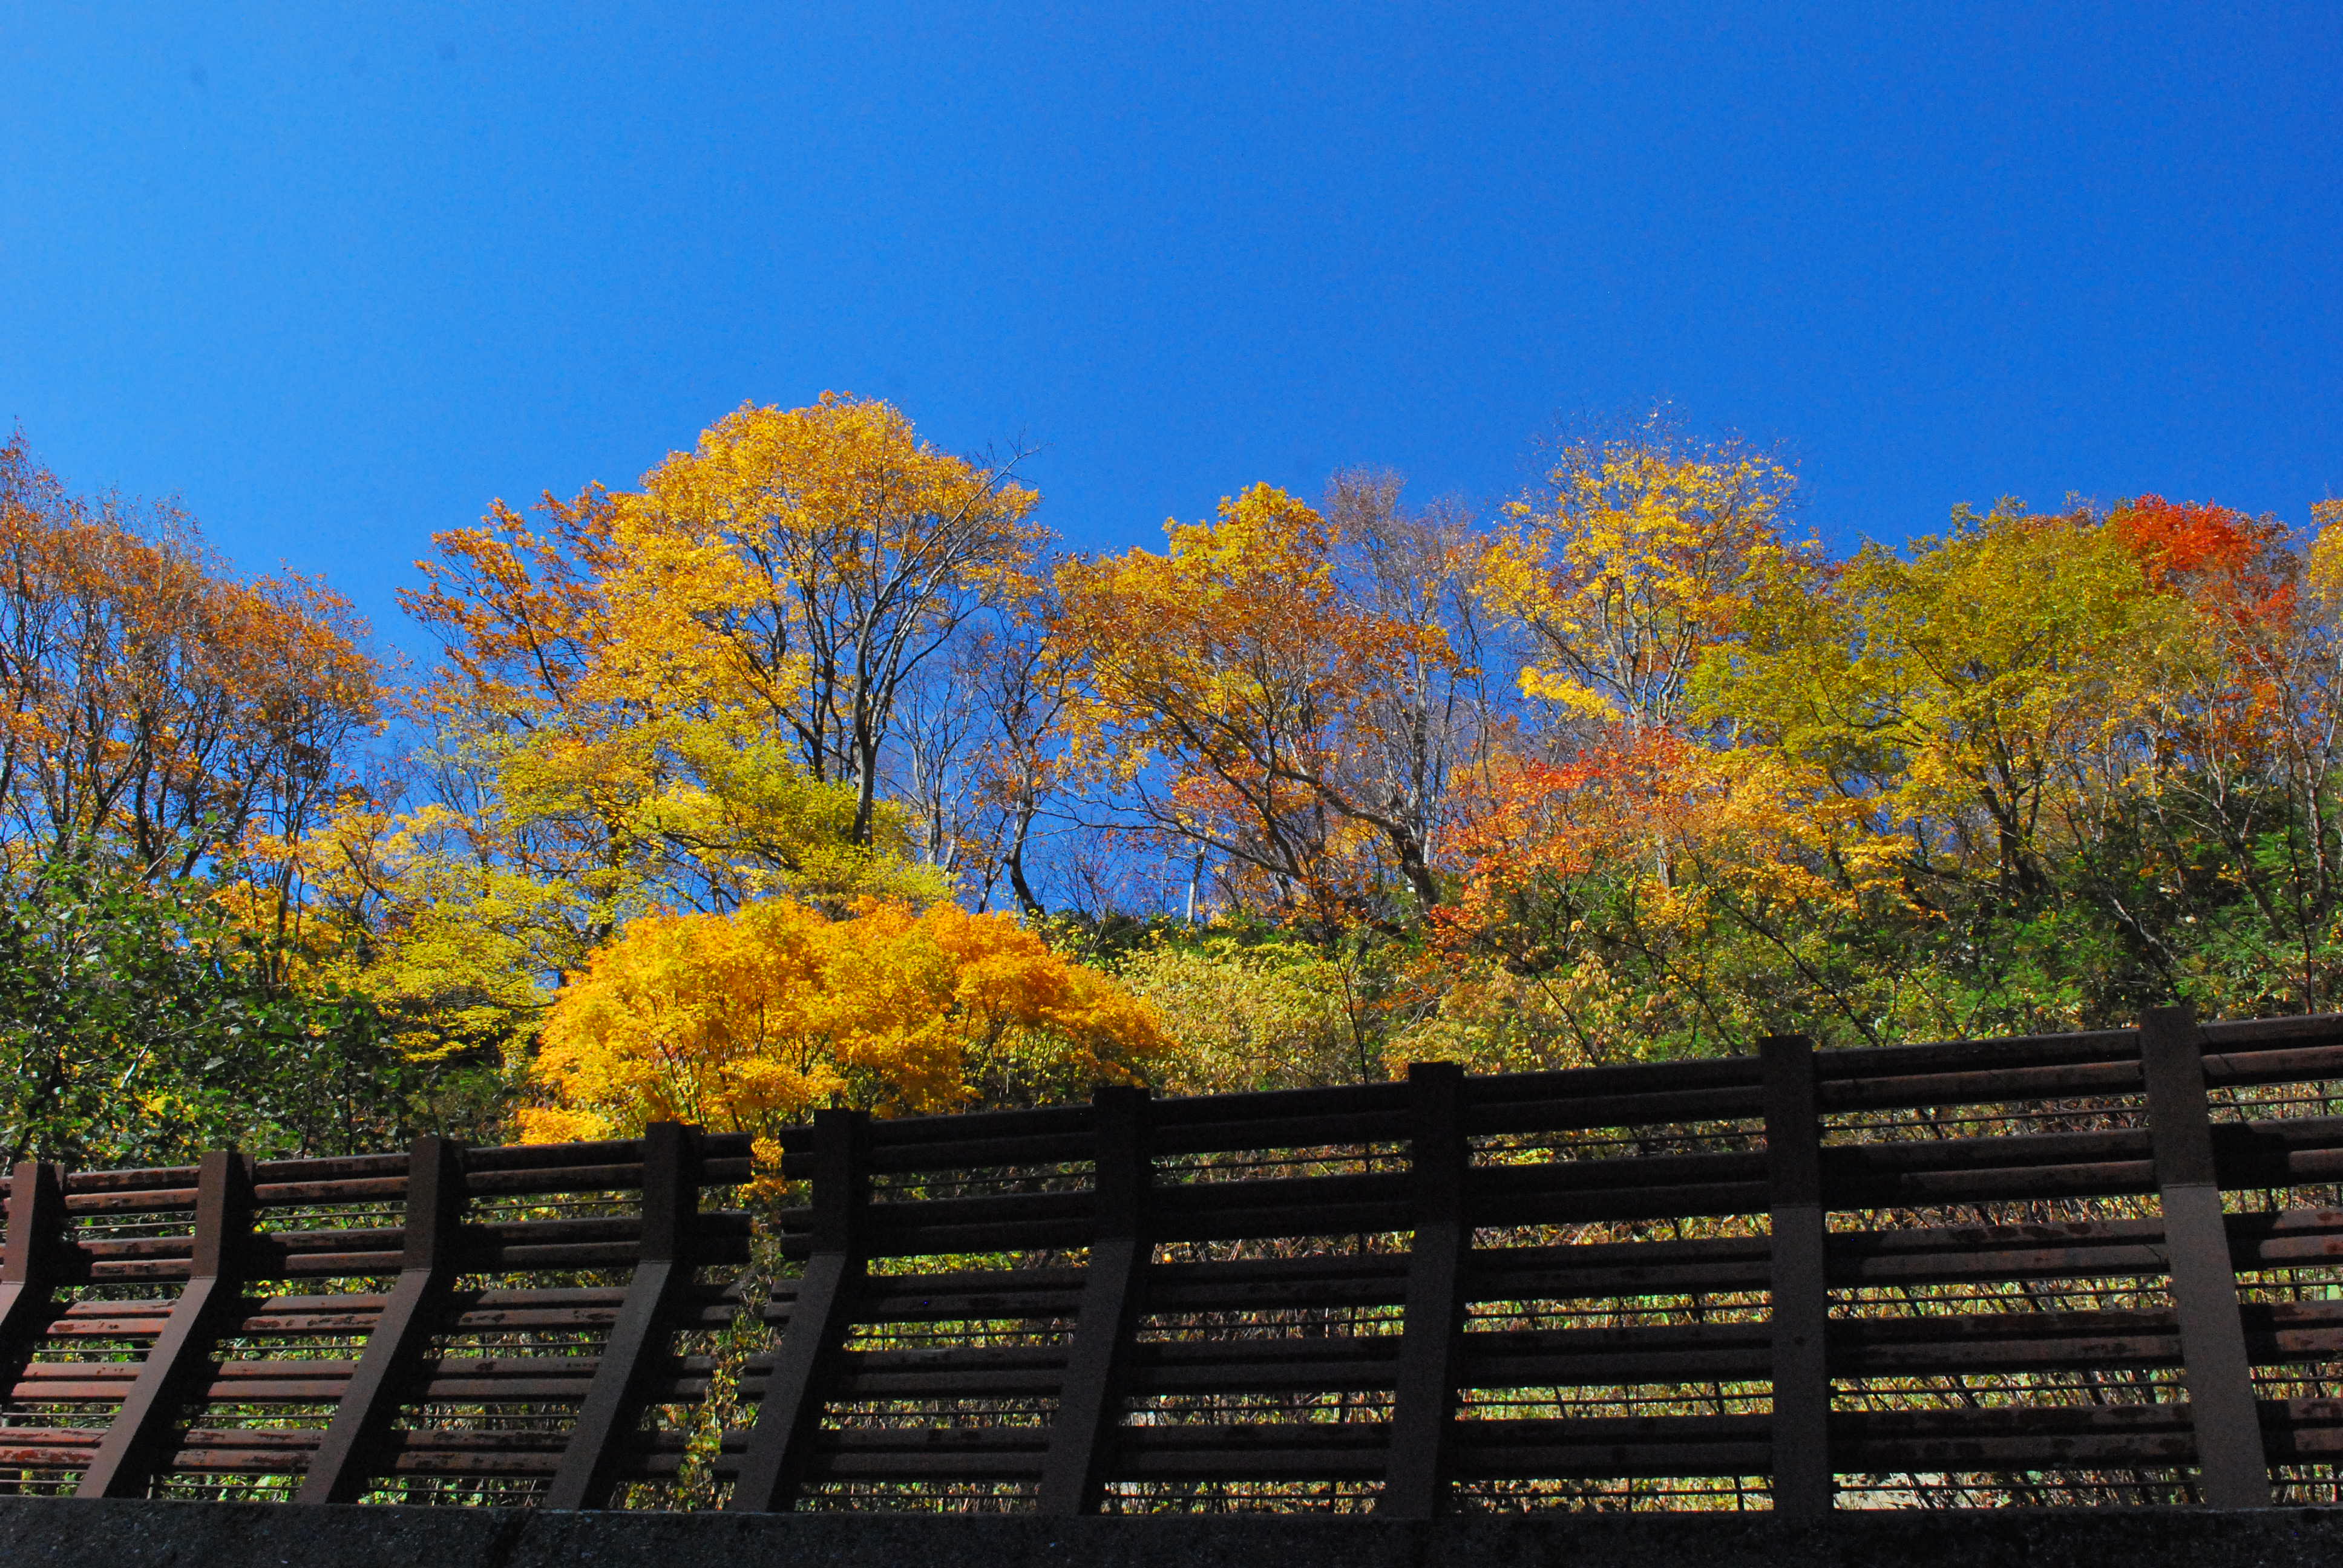 雪害予防の柵越しから。楓の黄色と真っ青な空が鮮やかでした。